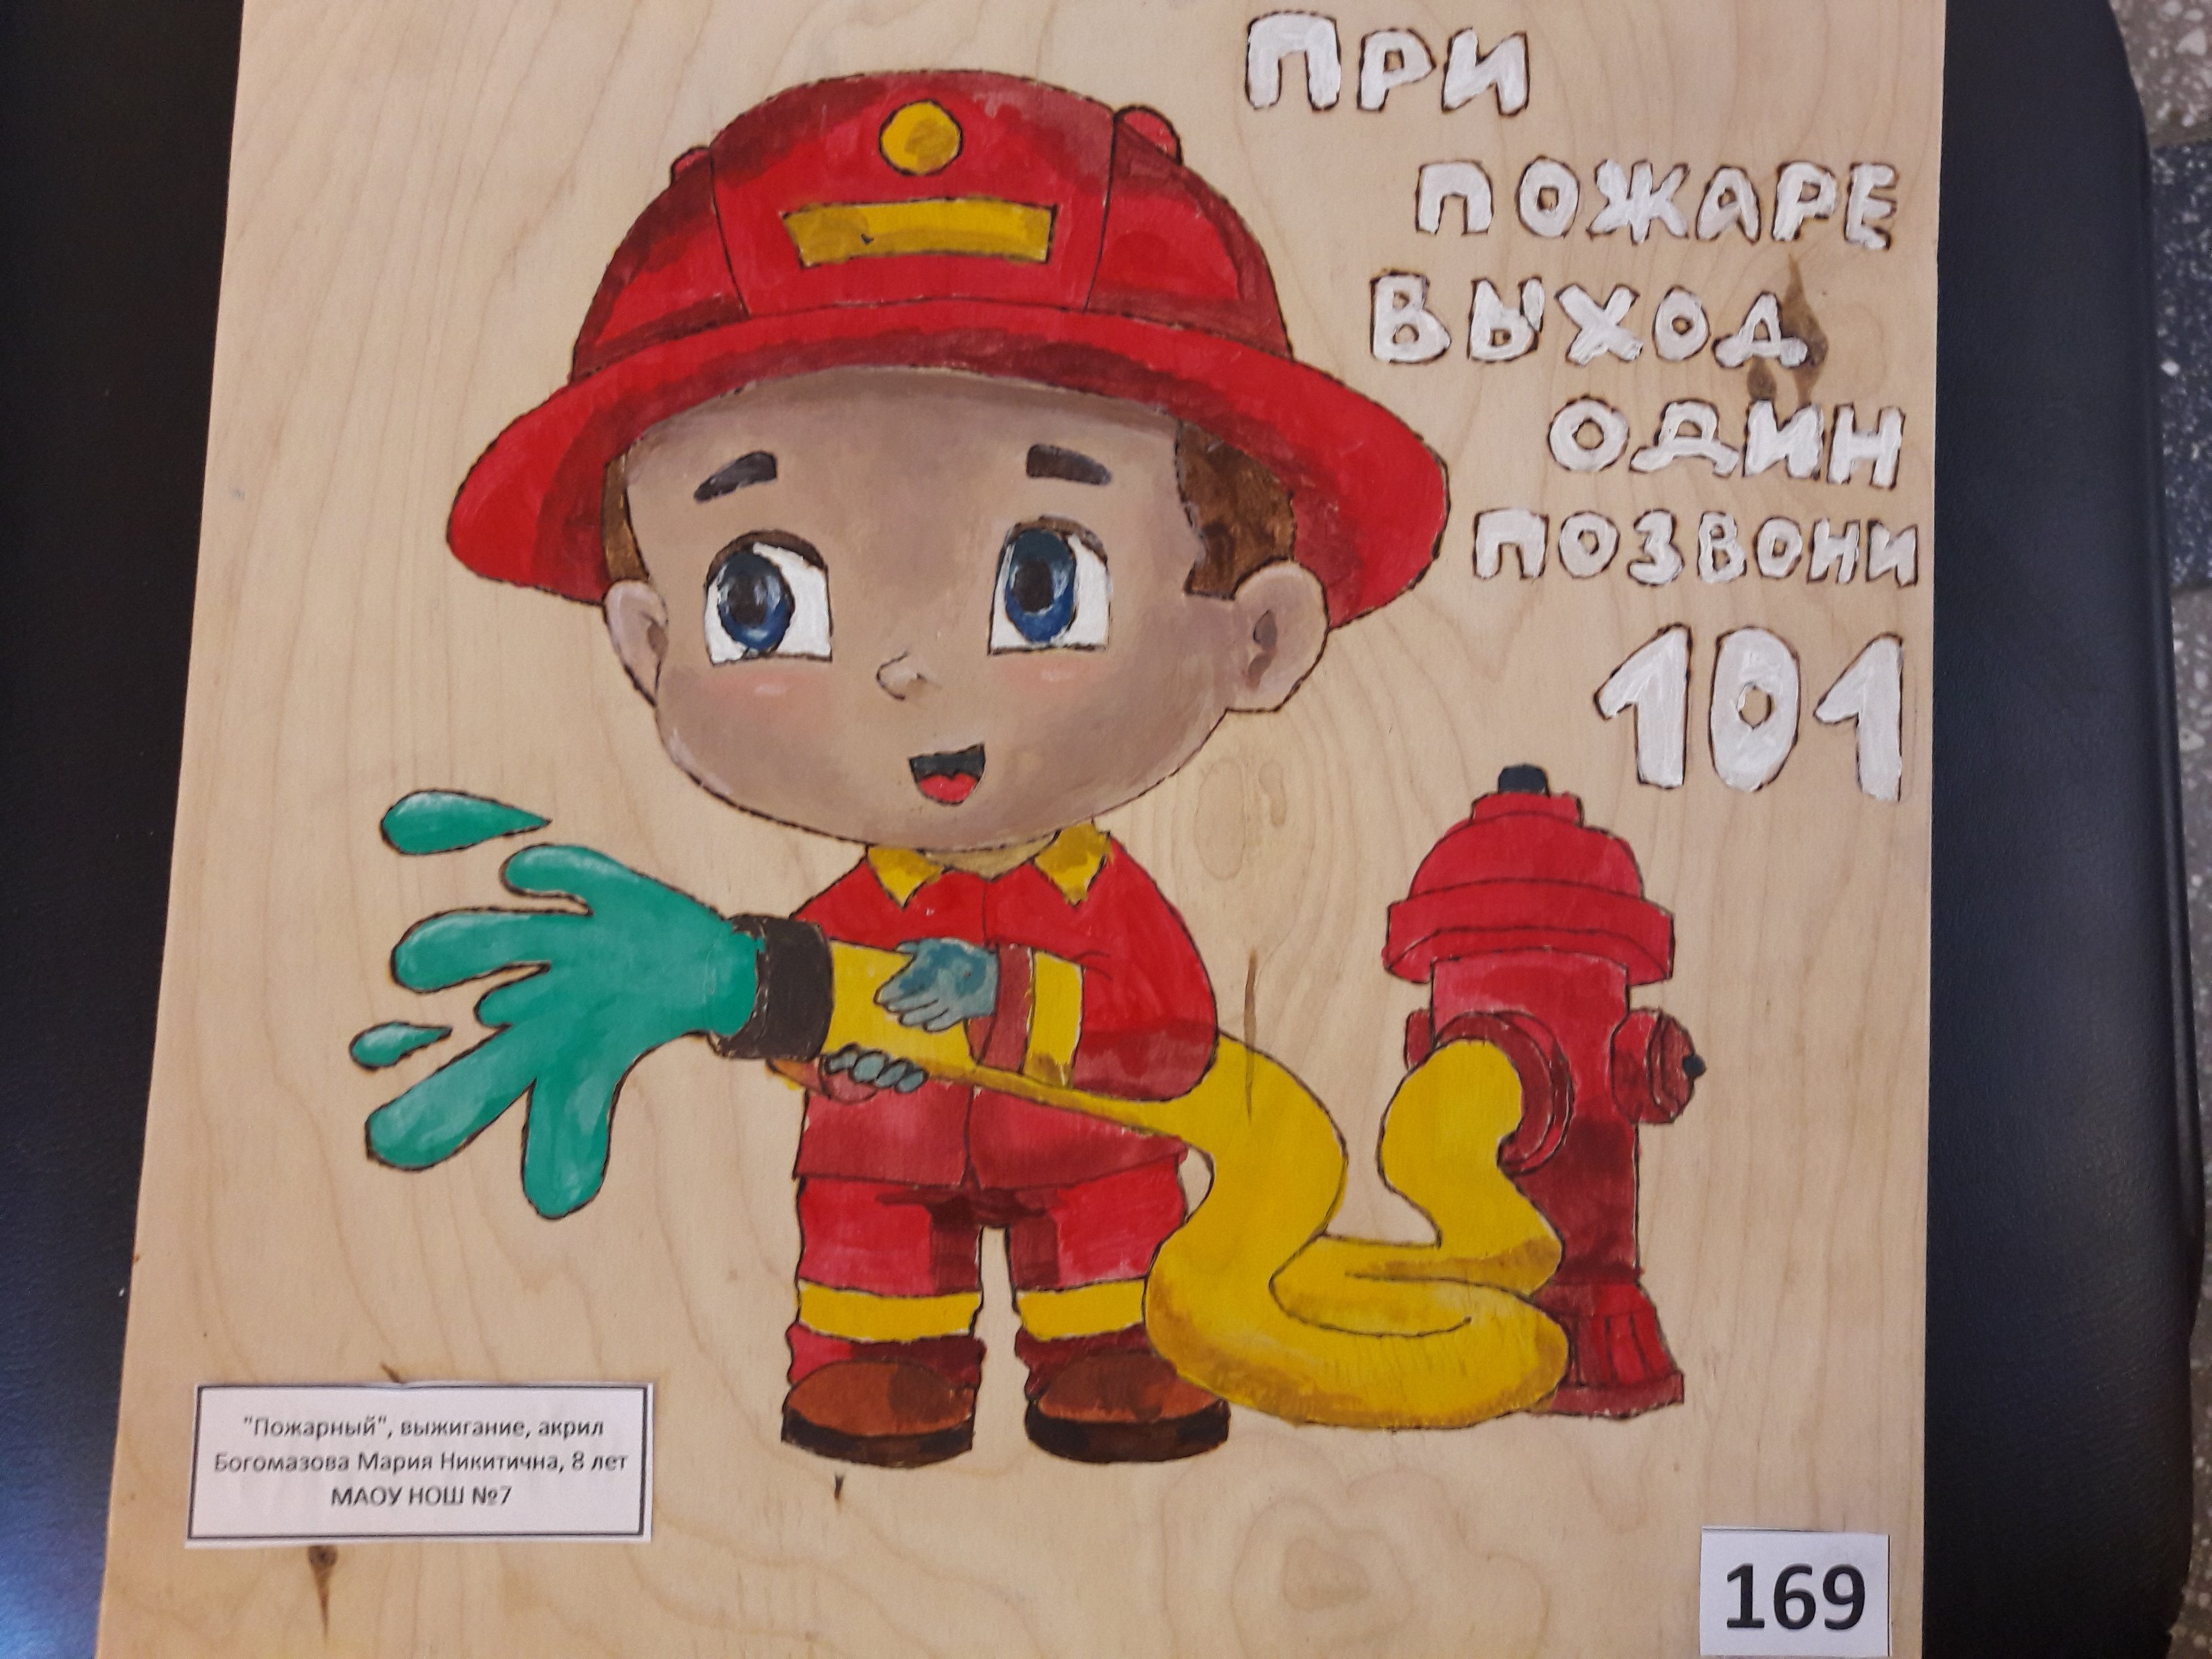 Мой друг пожарный на русском. Пожарная безопасность глазами детей. Рисунок пожарная безопасность. Безопасность глазами детей конкурс. Плакат на противопожарную тему.